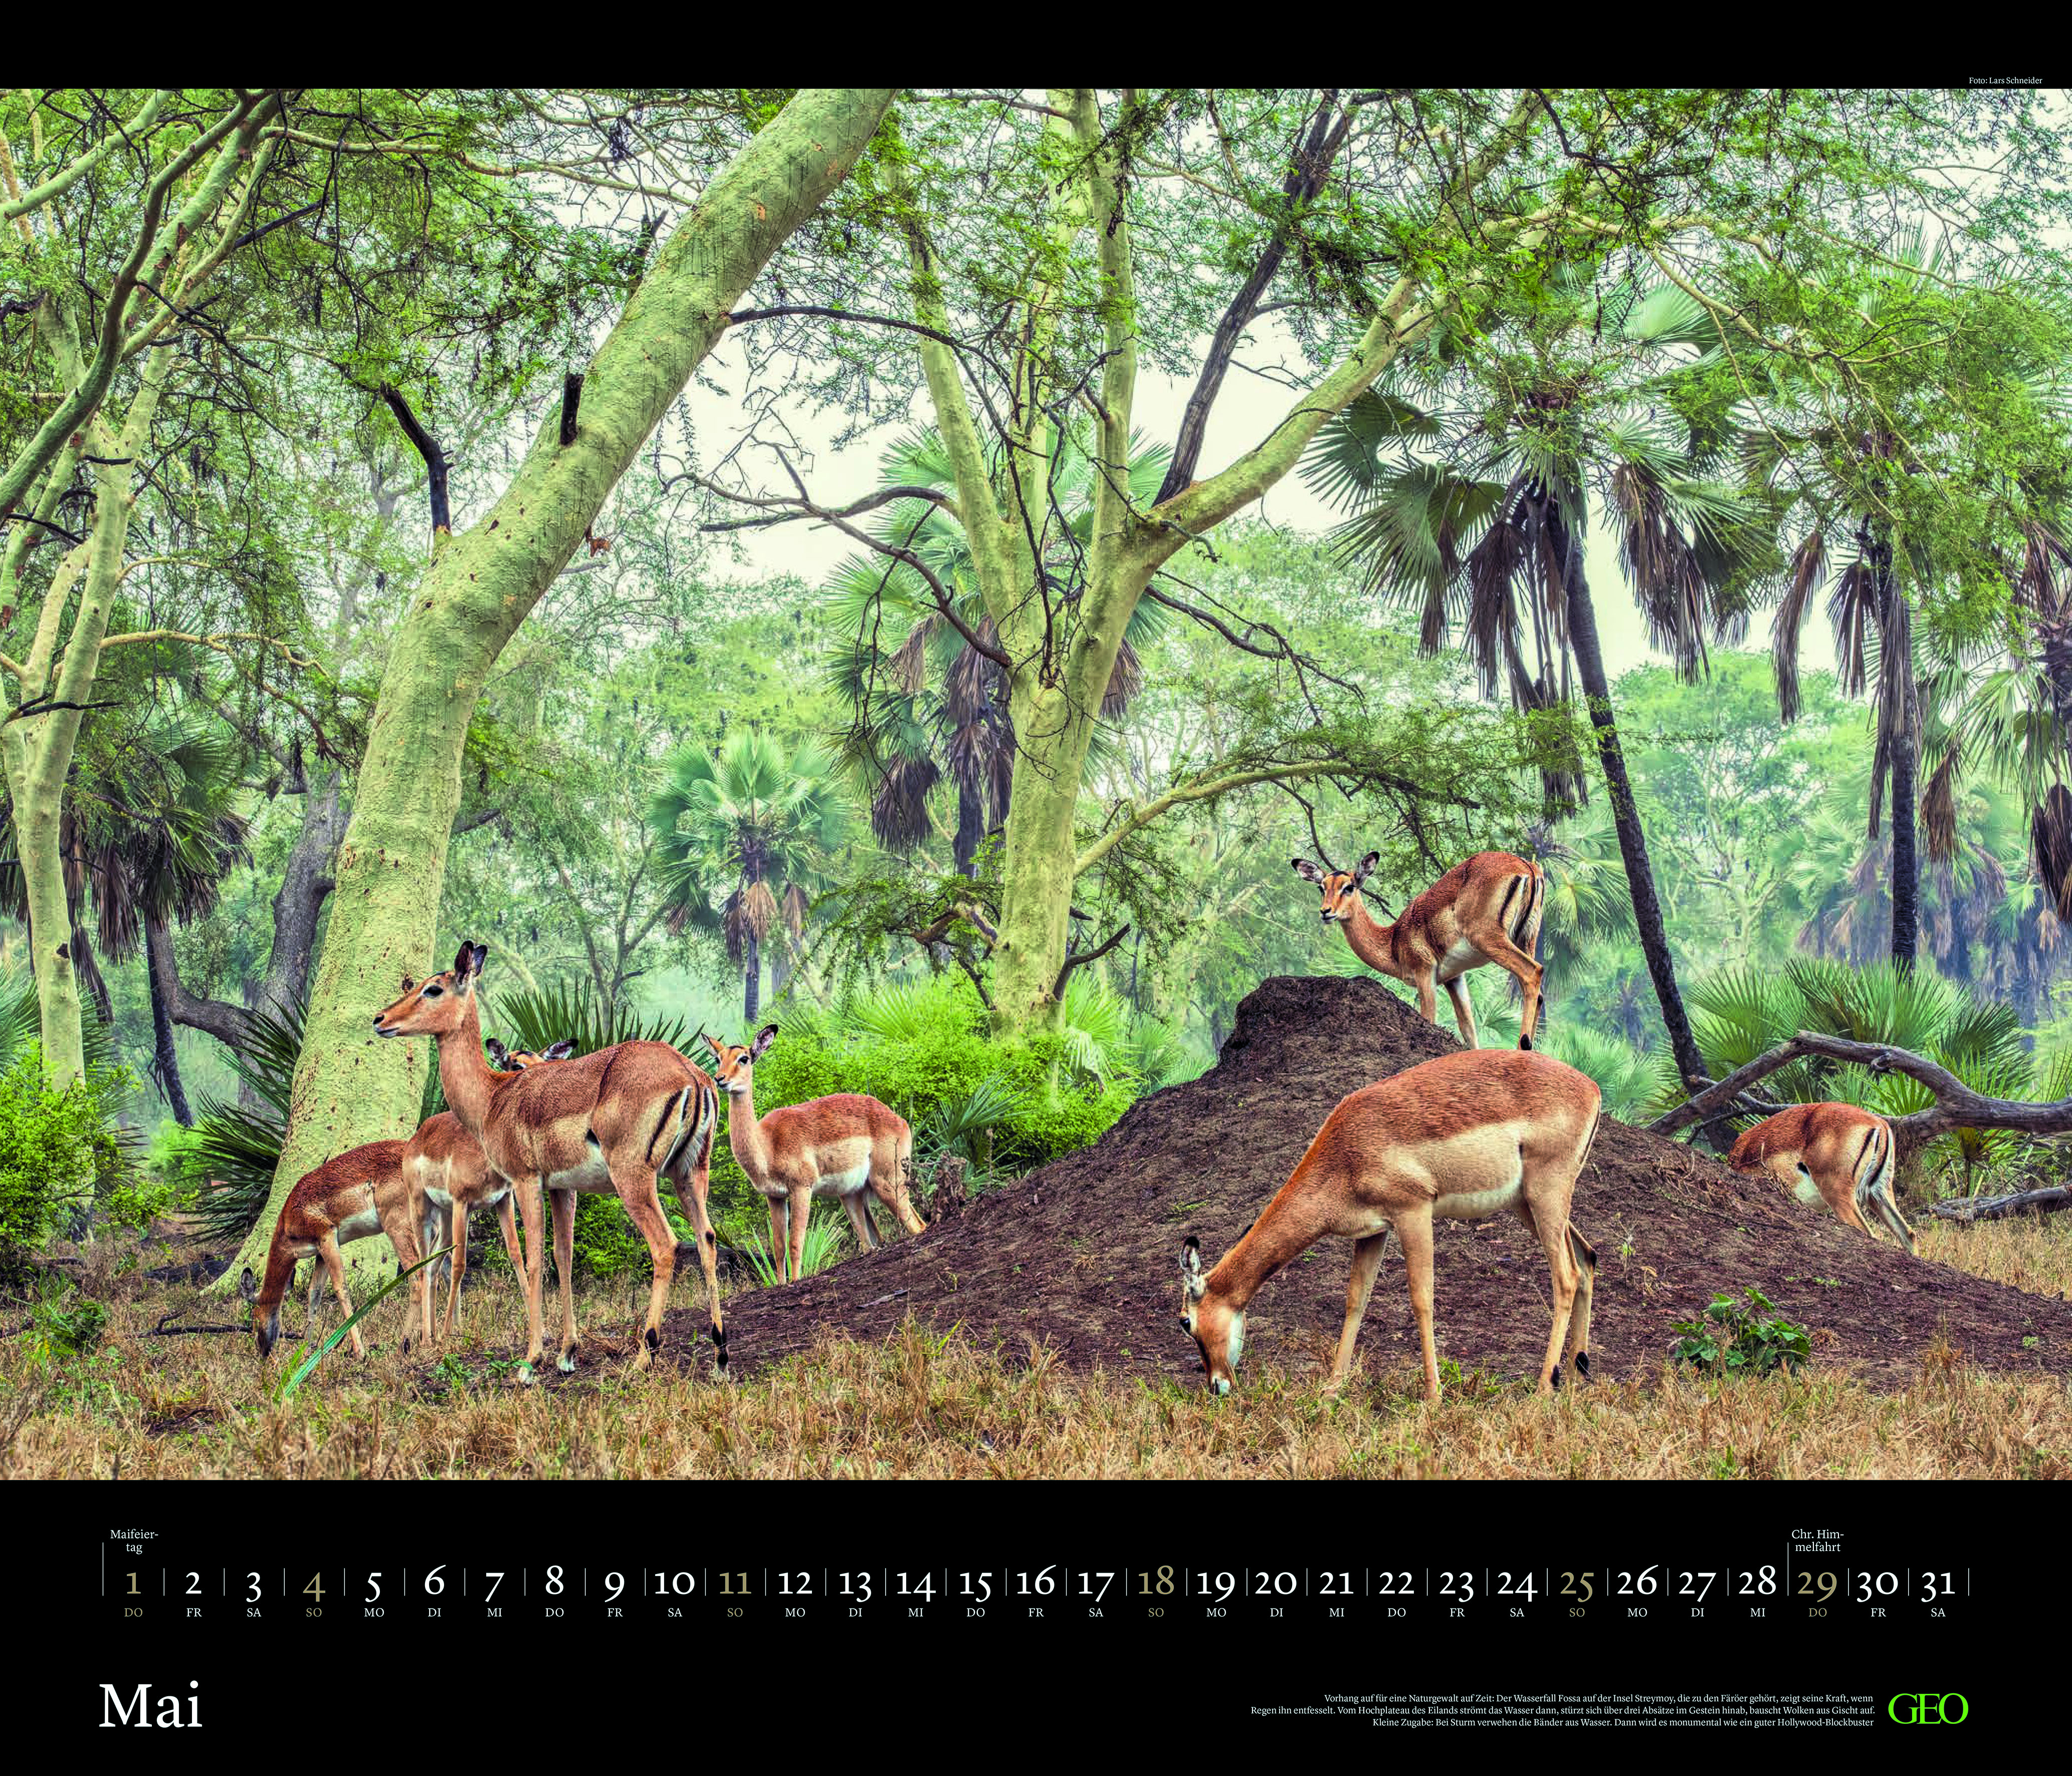 Edition-Kalender "Tierwelten" 2025